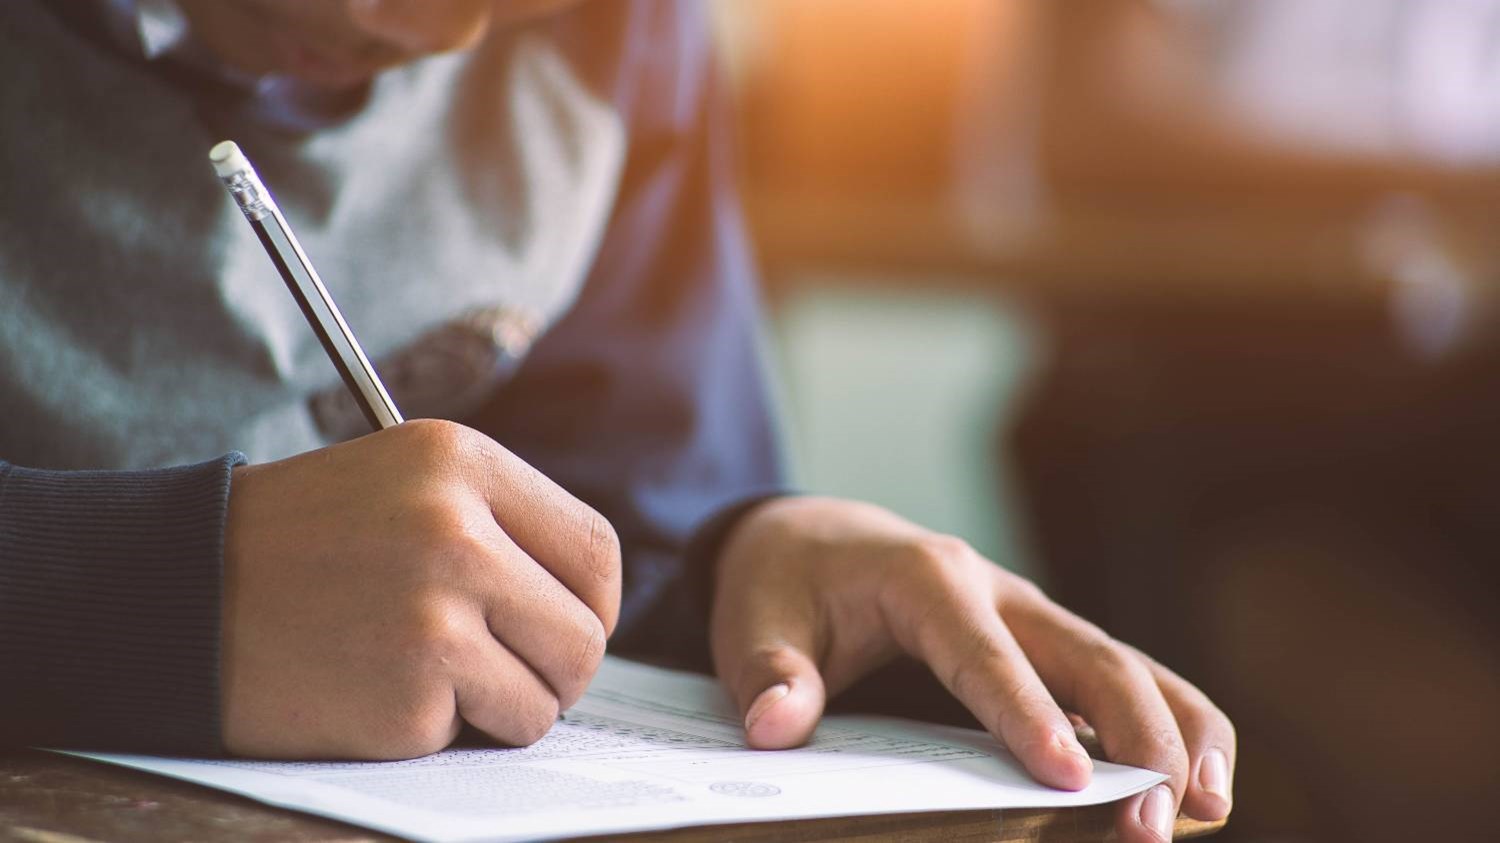 Σχολεία: Παράταση της χρονιάς χωρίς προαγωγικές εξετάσεις – Το σχέδιο για Δημοτικά, Γυμνάσια και Λύκεια